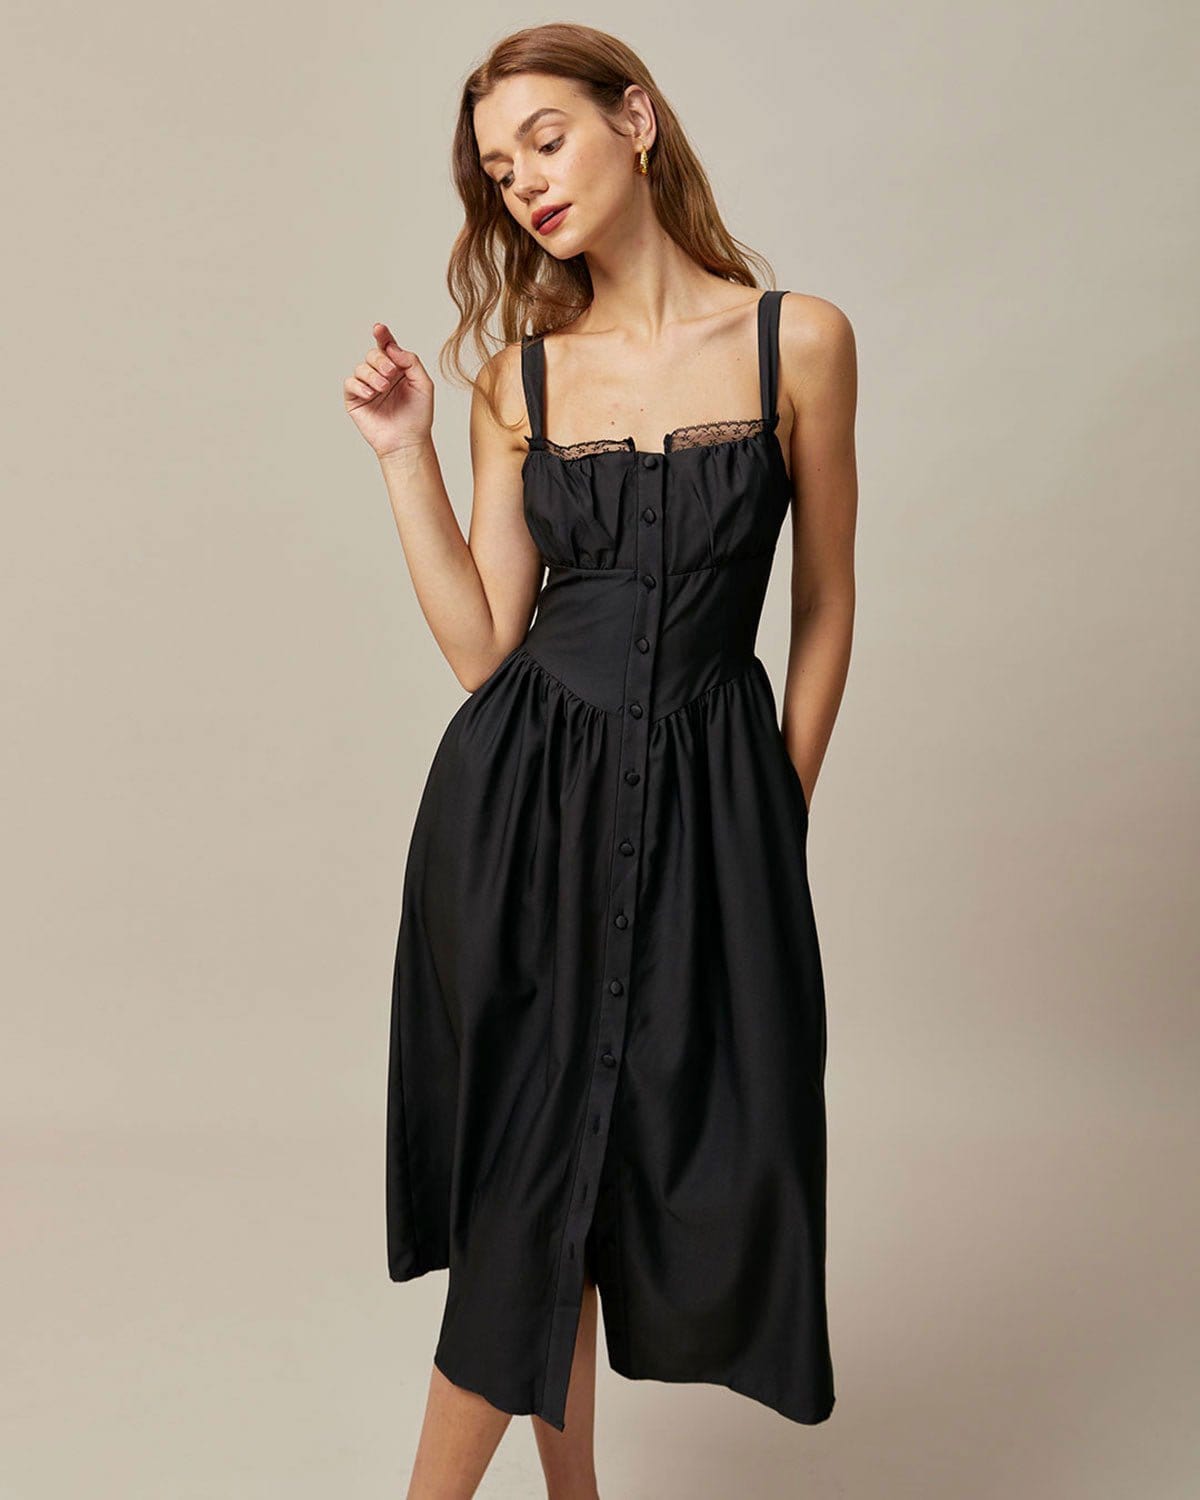 The Black Square Neck Lace Cami Midi Dress